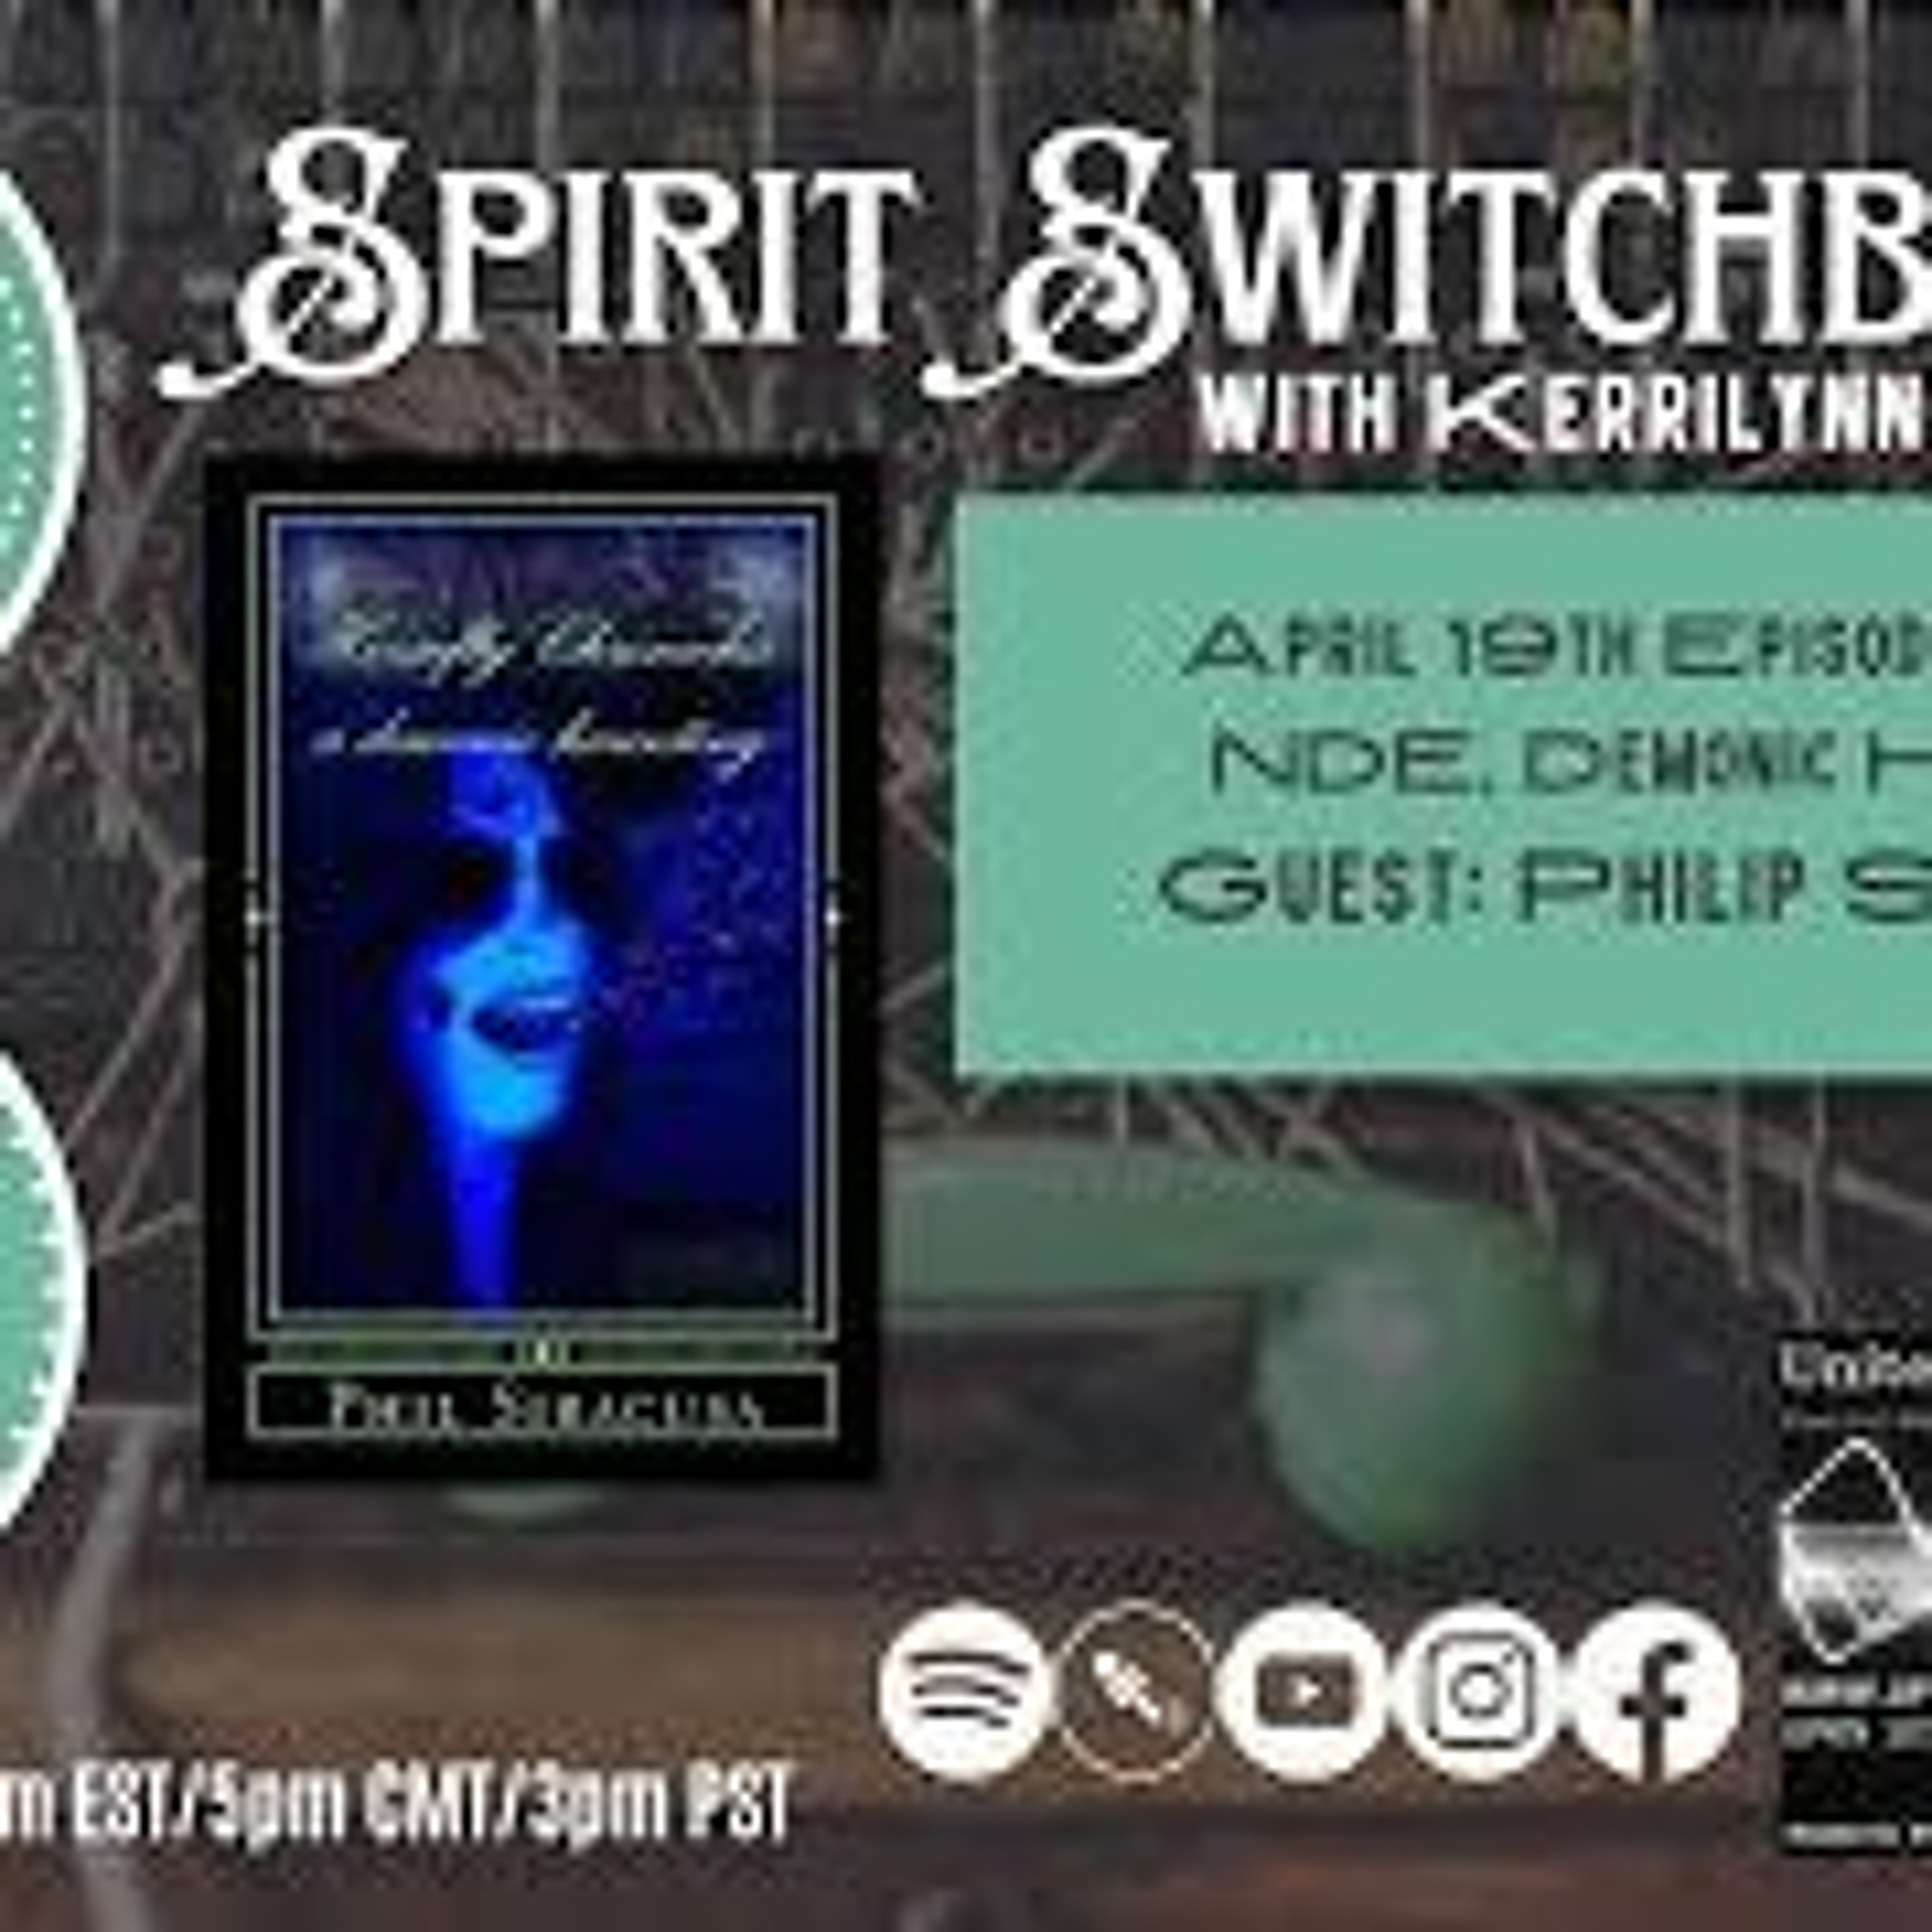 Spirit Switchboard - Philip Siracusa - NDE - Demonic Haunting